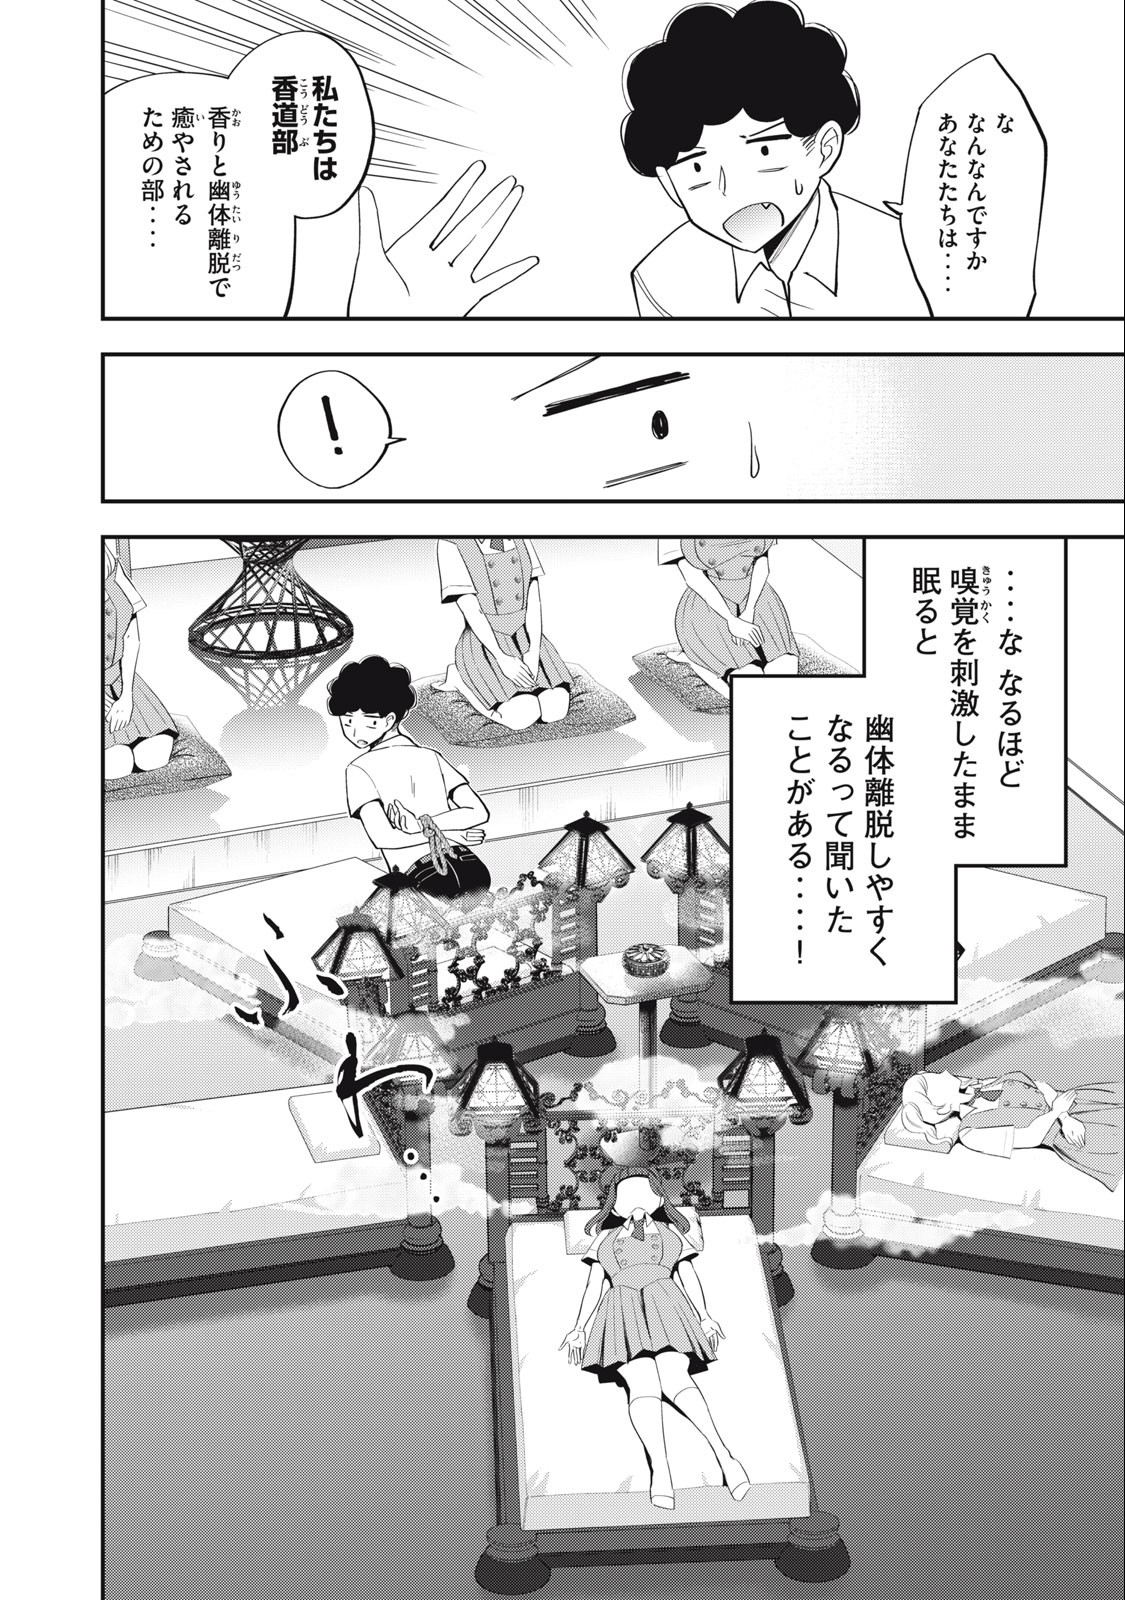 Yumeutsutsu no Hana no Sono - Chapter 9 - Page 4